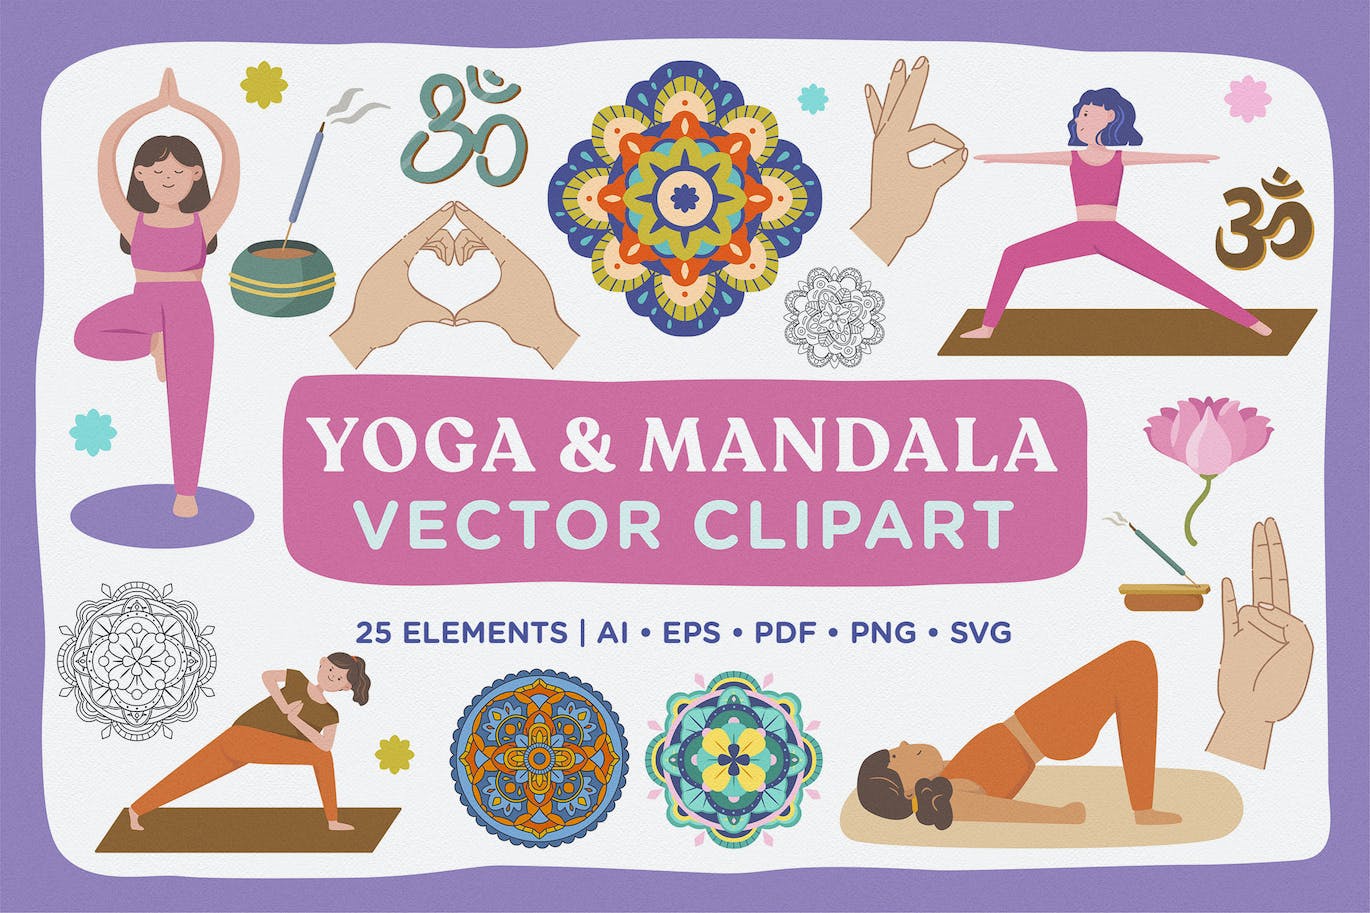 Yoga & Mandala Vector Clipart Pack